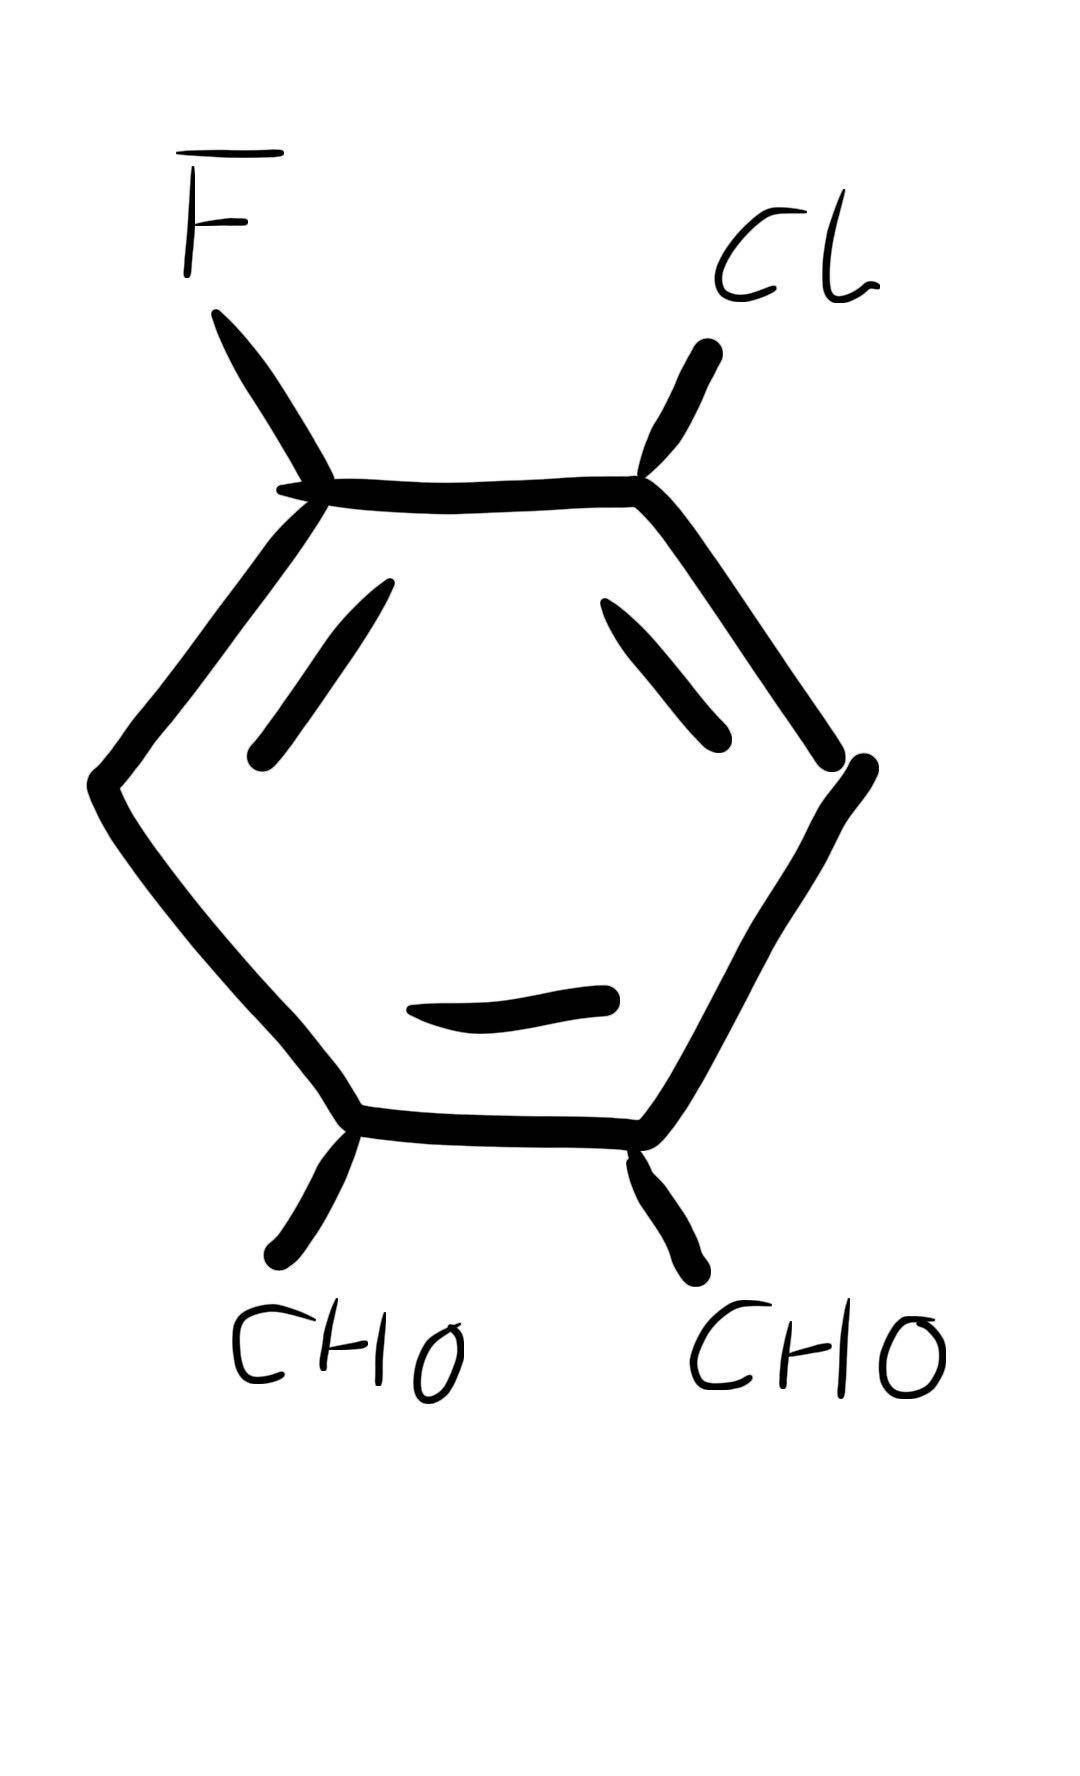 你最喜欢的化学元素\/无机物\/有机物是什么?为